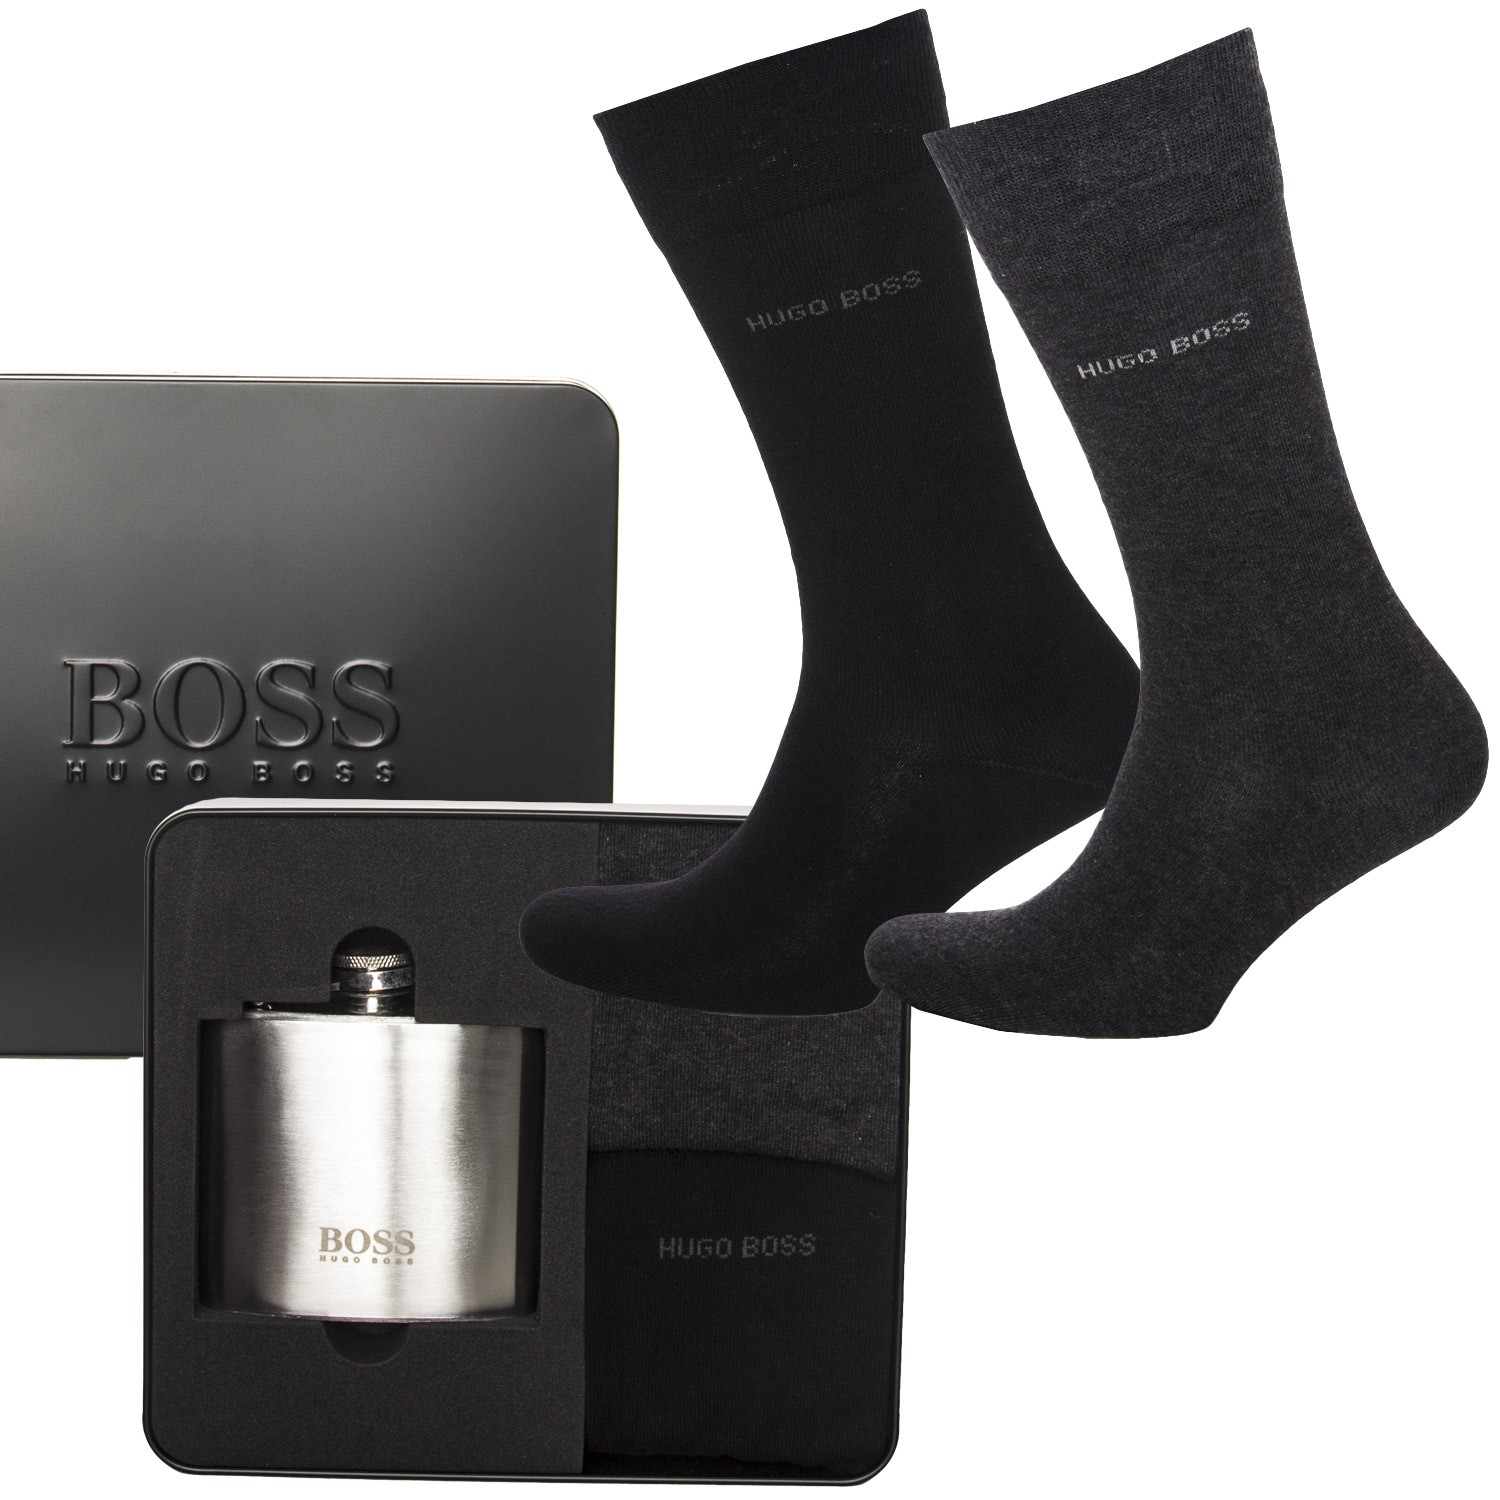 hugo boss socks gift set